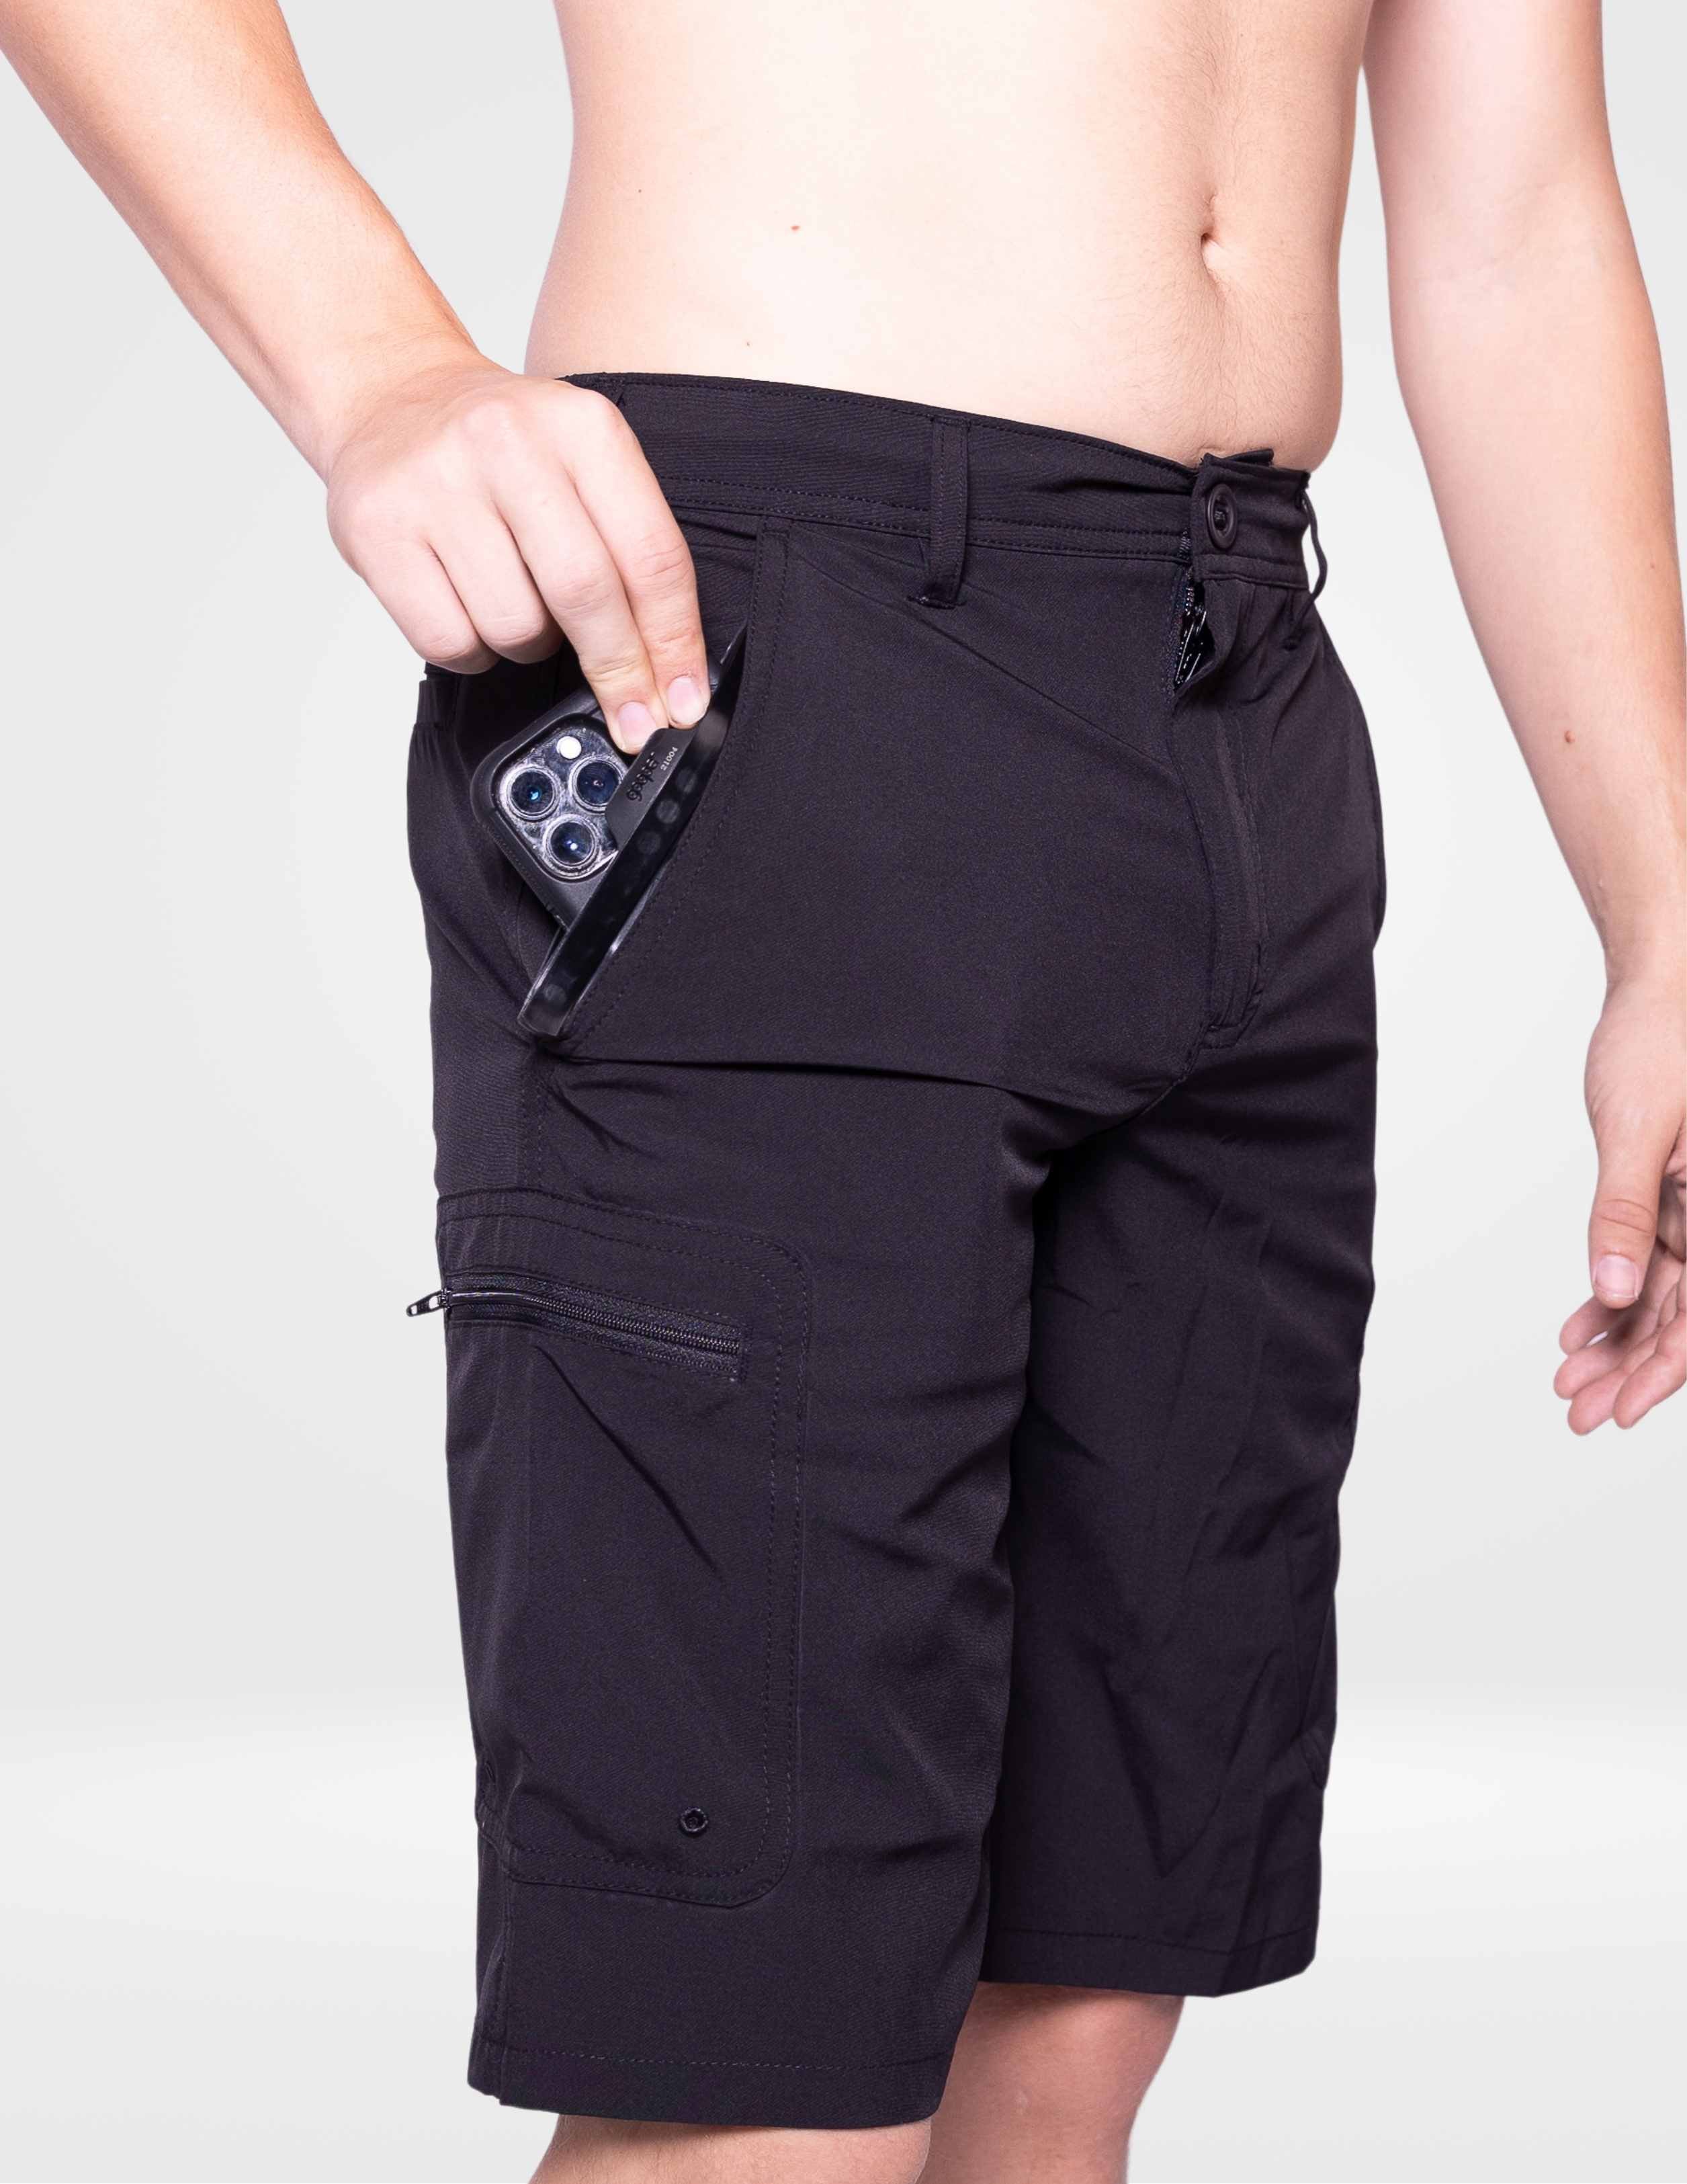 Dry Pocket Apparel – Waterproof Pocket Bathing Suit, Dry Bags, Coolers